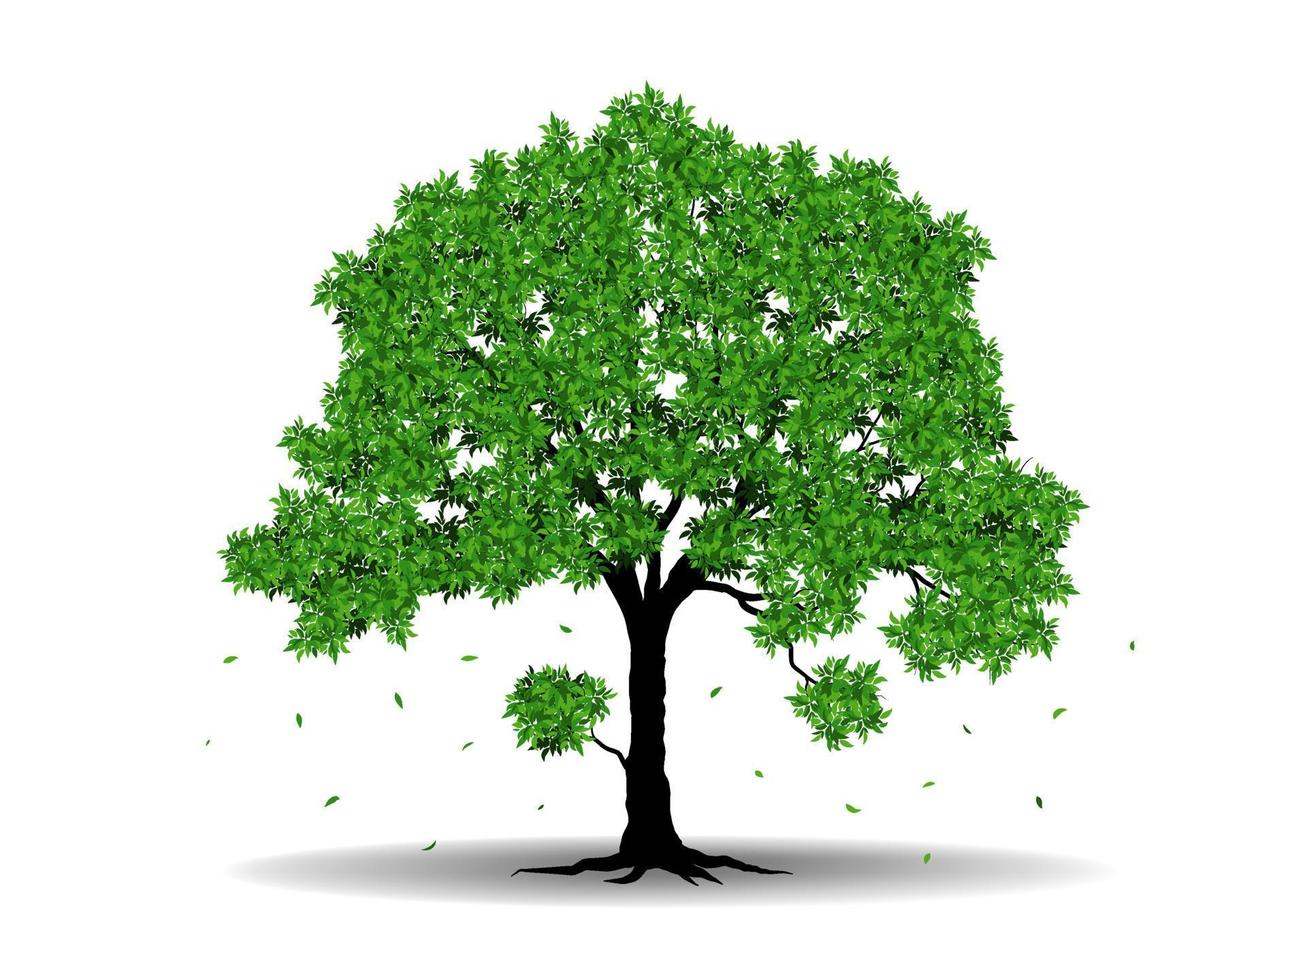 el gran árbol con hojas verdes se ve hermoso y refrescante. concepto de logotipo de árbol y raíces. se puede utilizar para su trabajo. vector